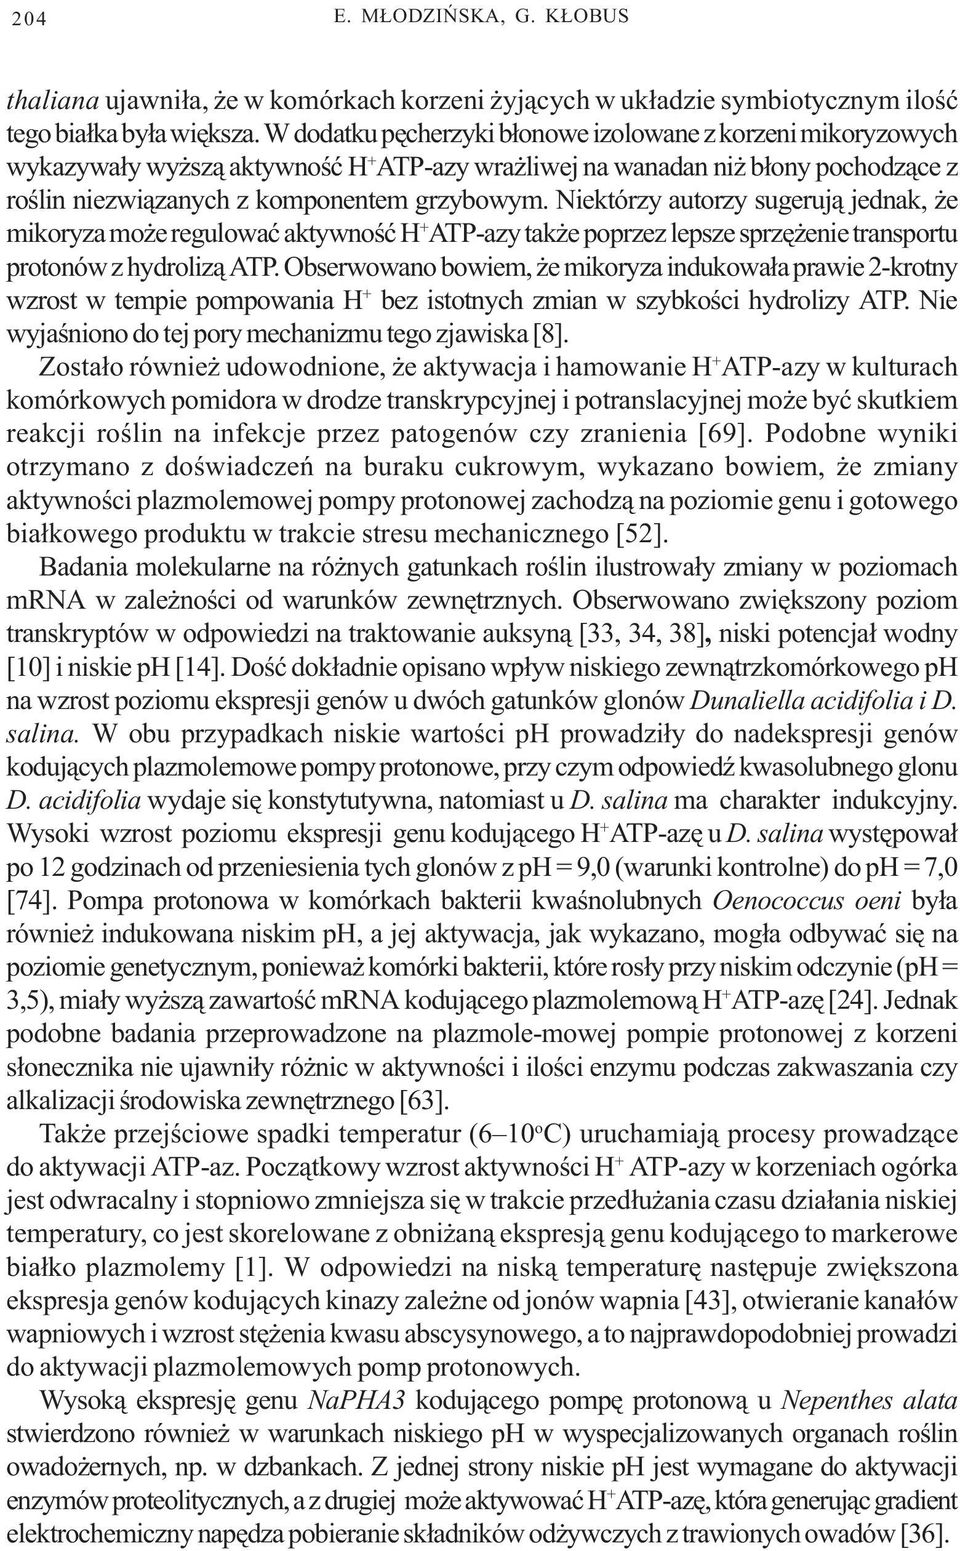 Niektórzy autorzy sugeruj¹ jednak, e mikoryza mo e regulowaæ aktywnoœæ H + ATP-azy tak e poprzez lepsze sprzê enie transportu protonów z hydroliz¹ ATP.